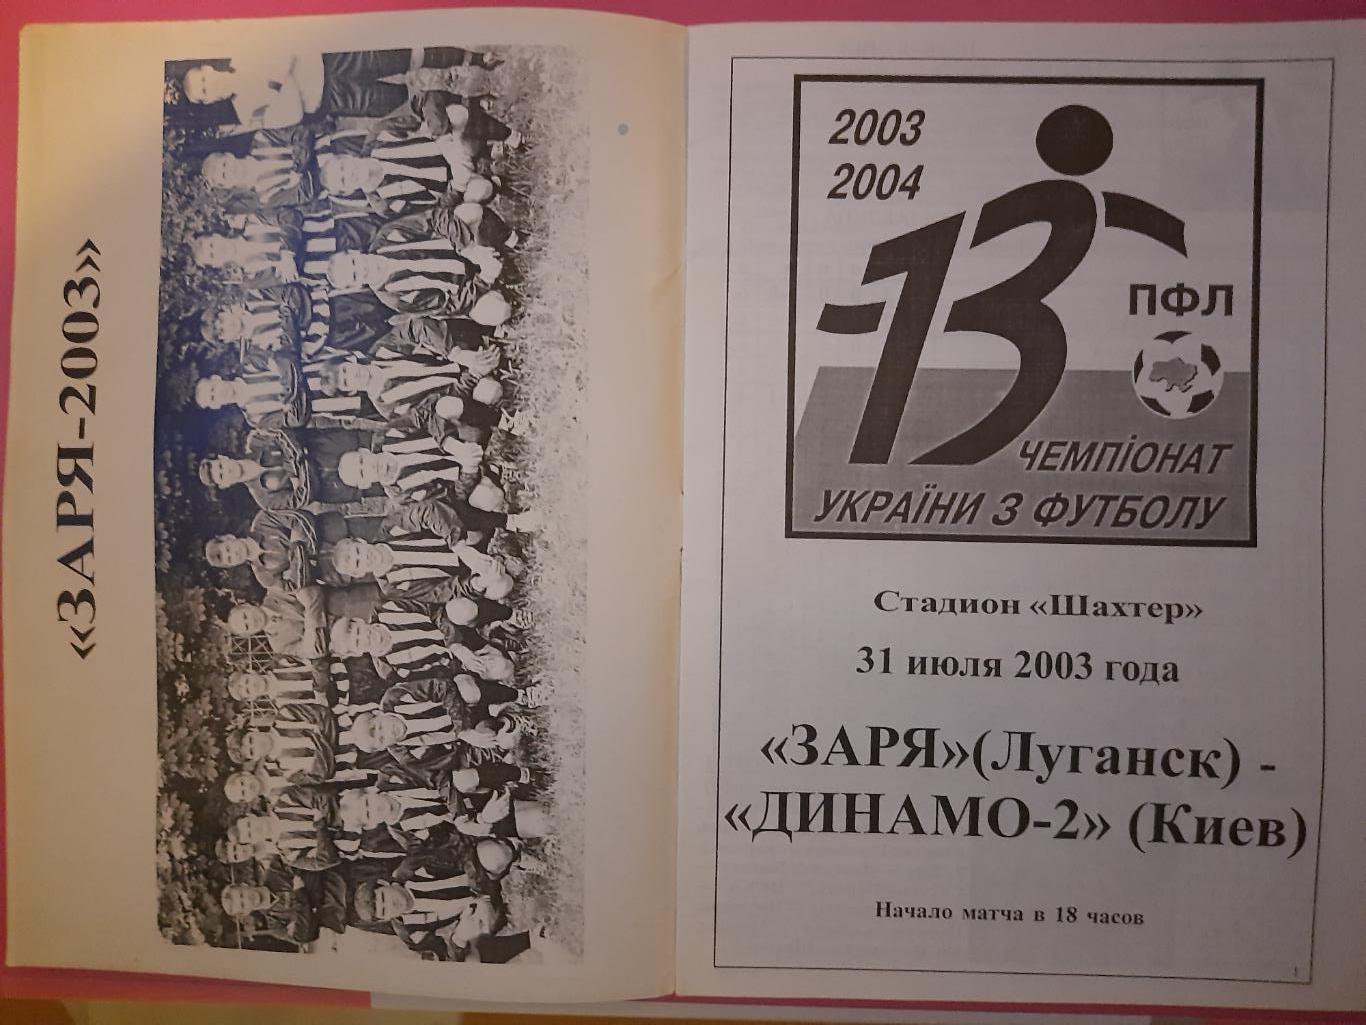 Заря Луганск -Динамо Киев 31.07.2003 1